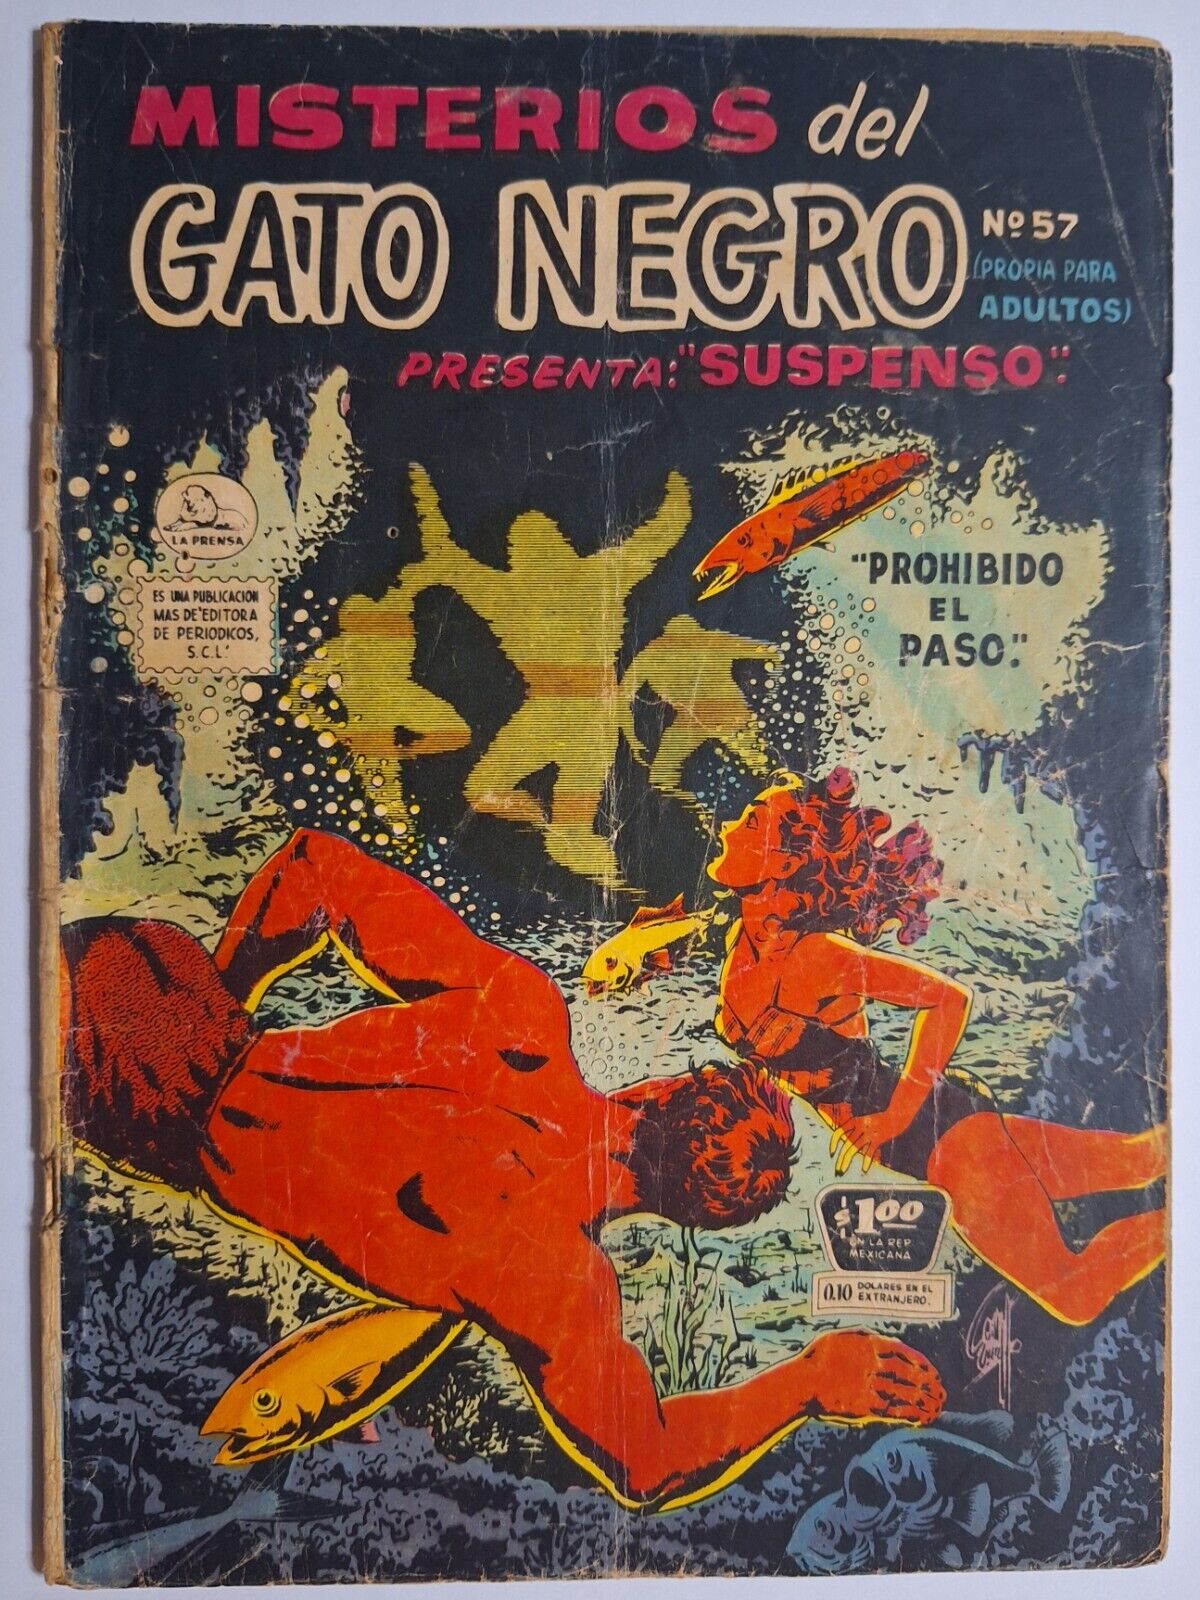 Marvel Tales #156 Diff. Cover Misterios del Gato Negro #57 La Prensa 1958 RARE